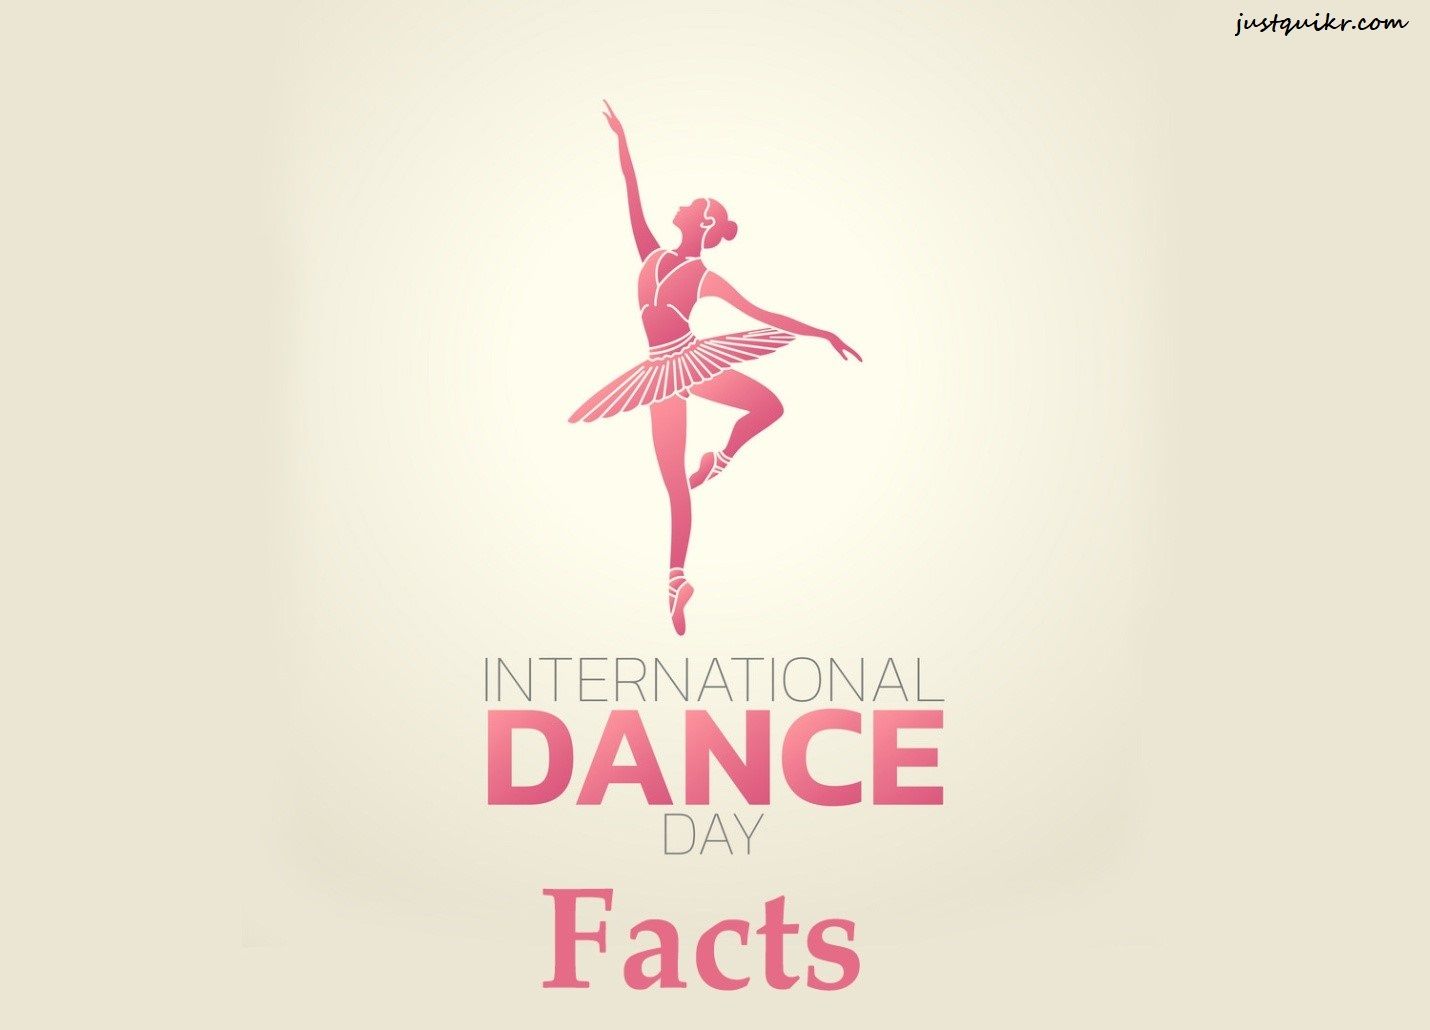 International Dance Day History and Facts. J u s t q u i k r. c o m